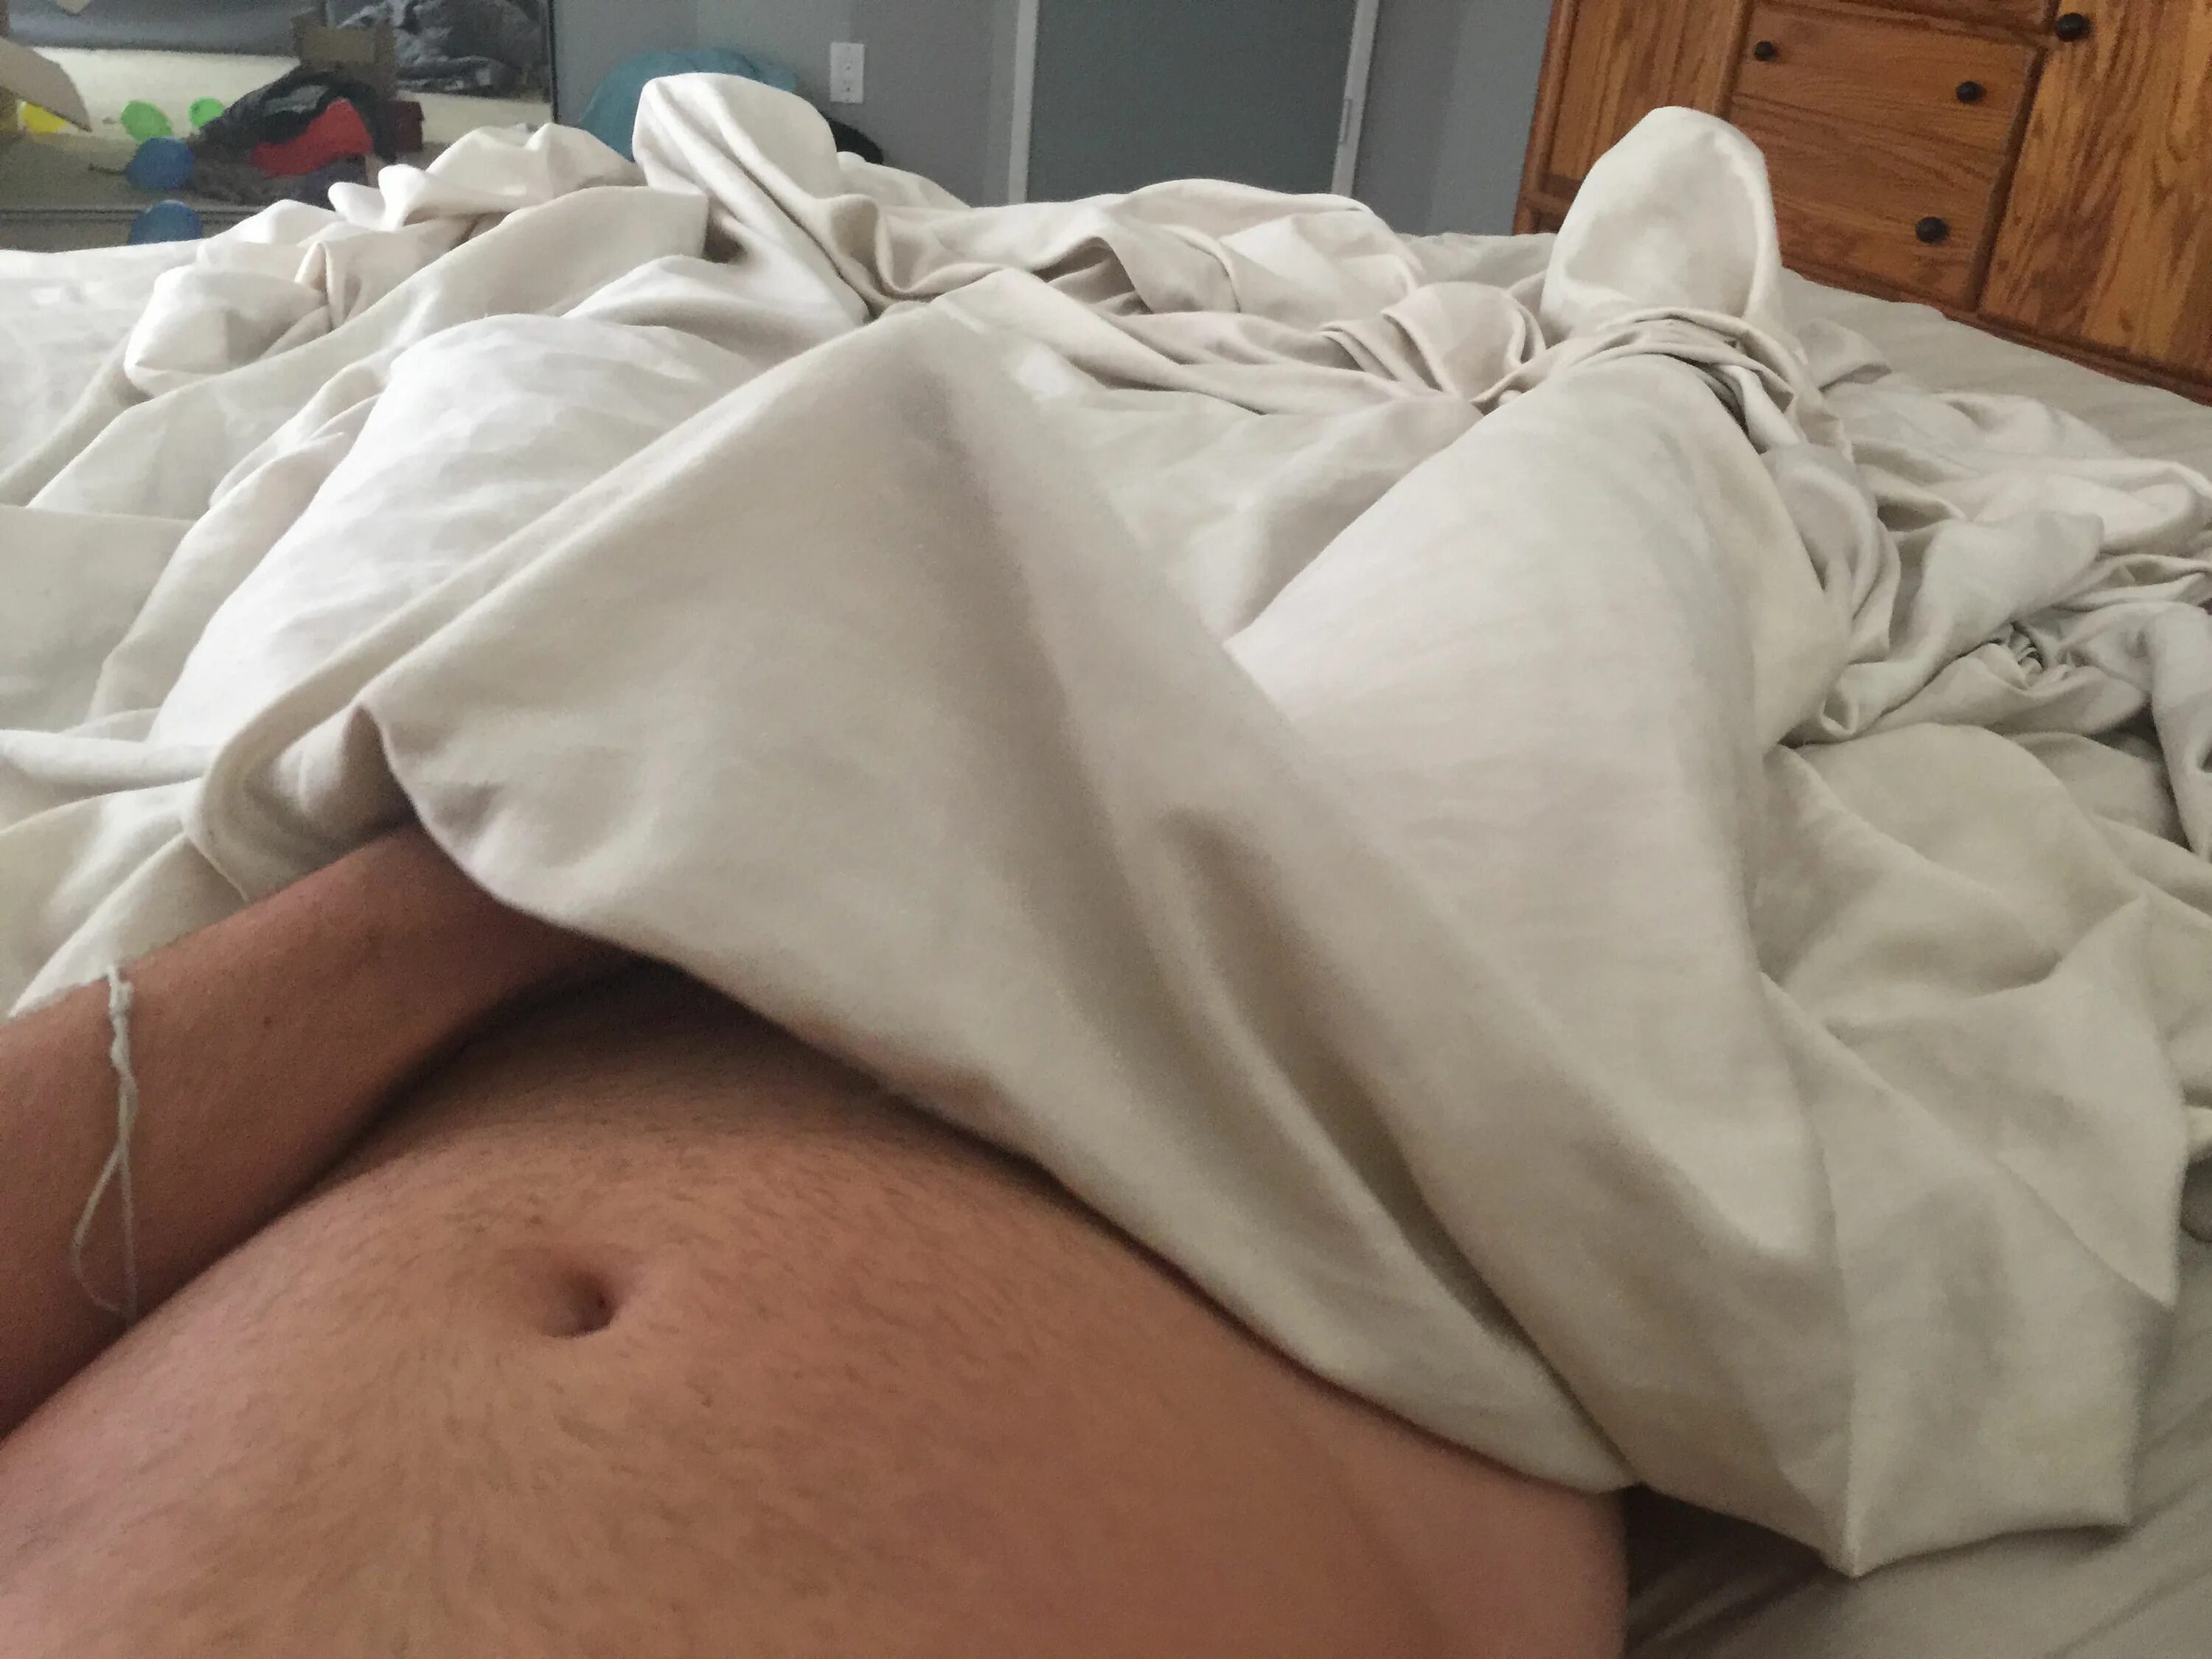 Утренняя эрекция. Утренняя эрекция у парней. Утренняя эрекция в постели. Встал под одеялом.